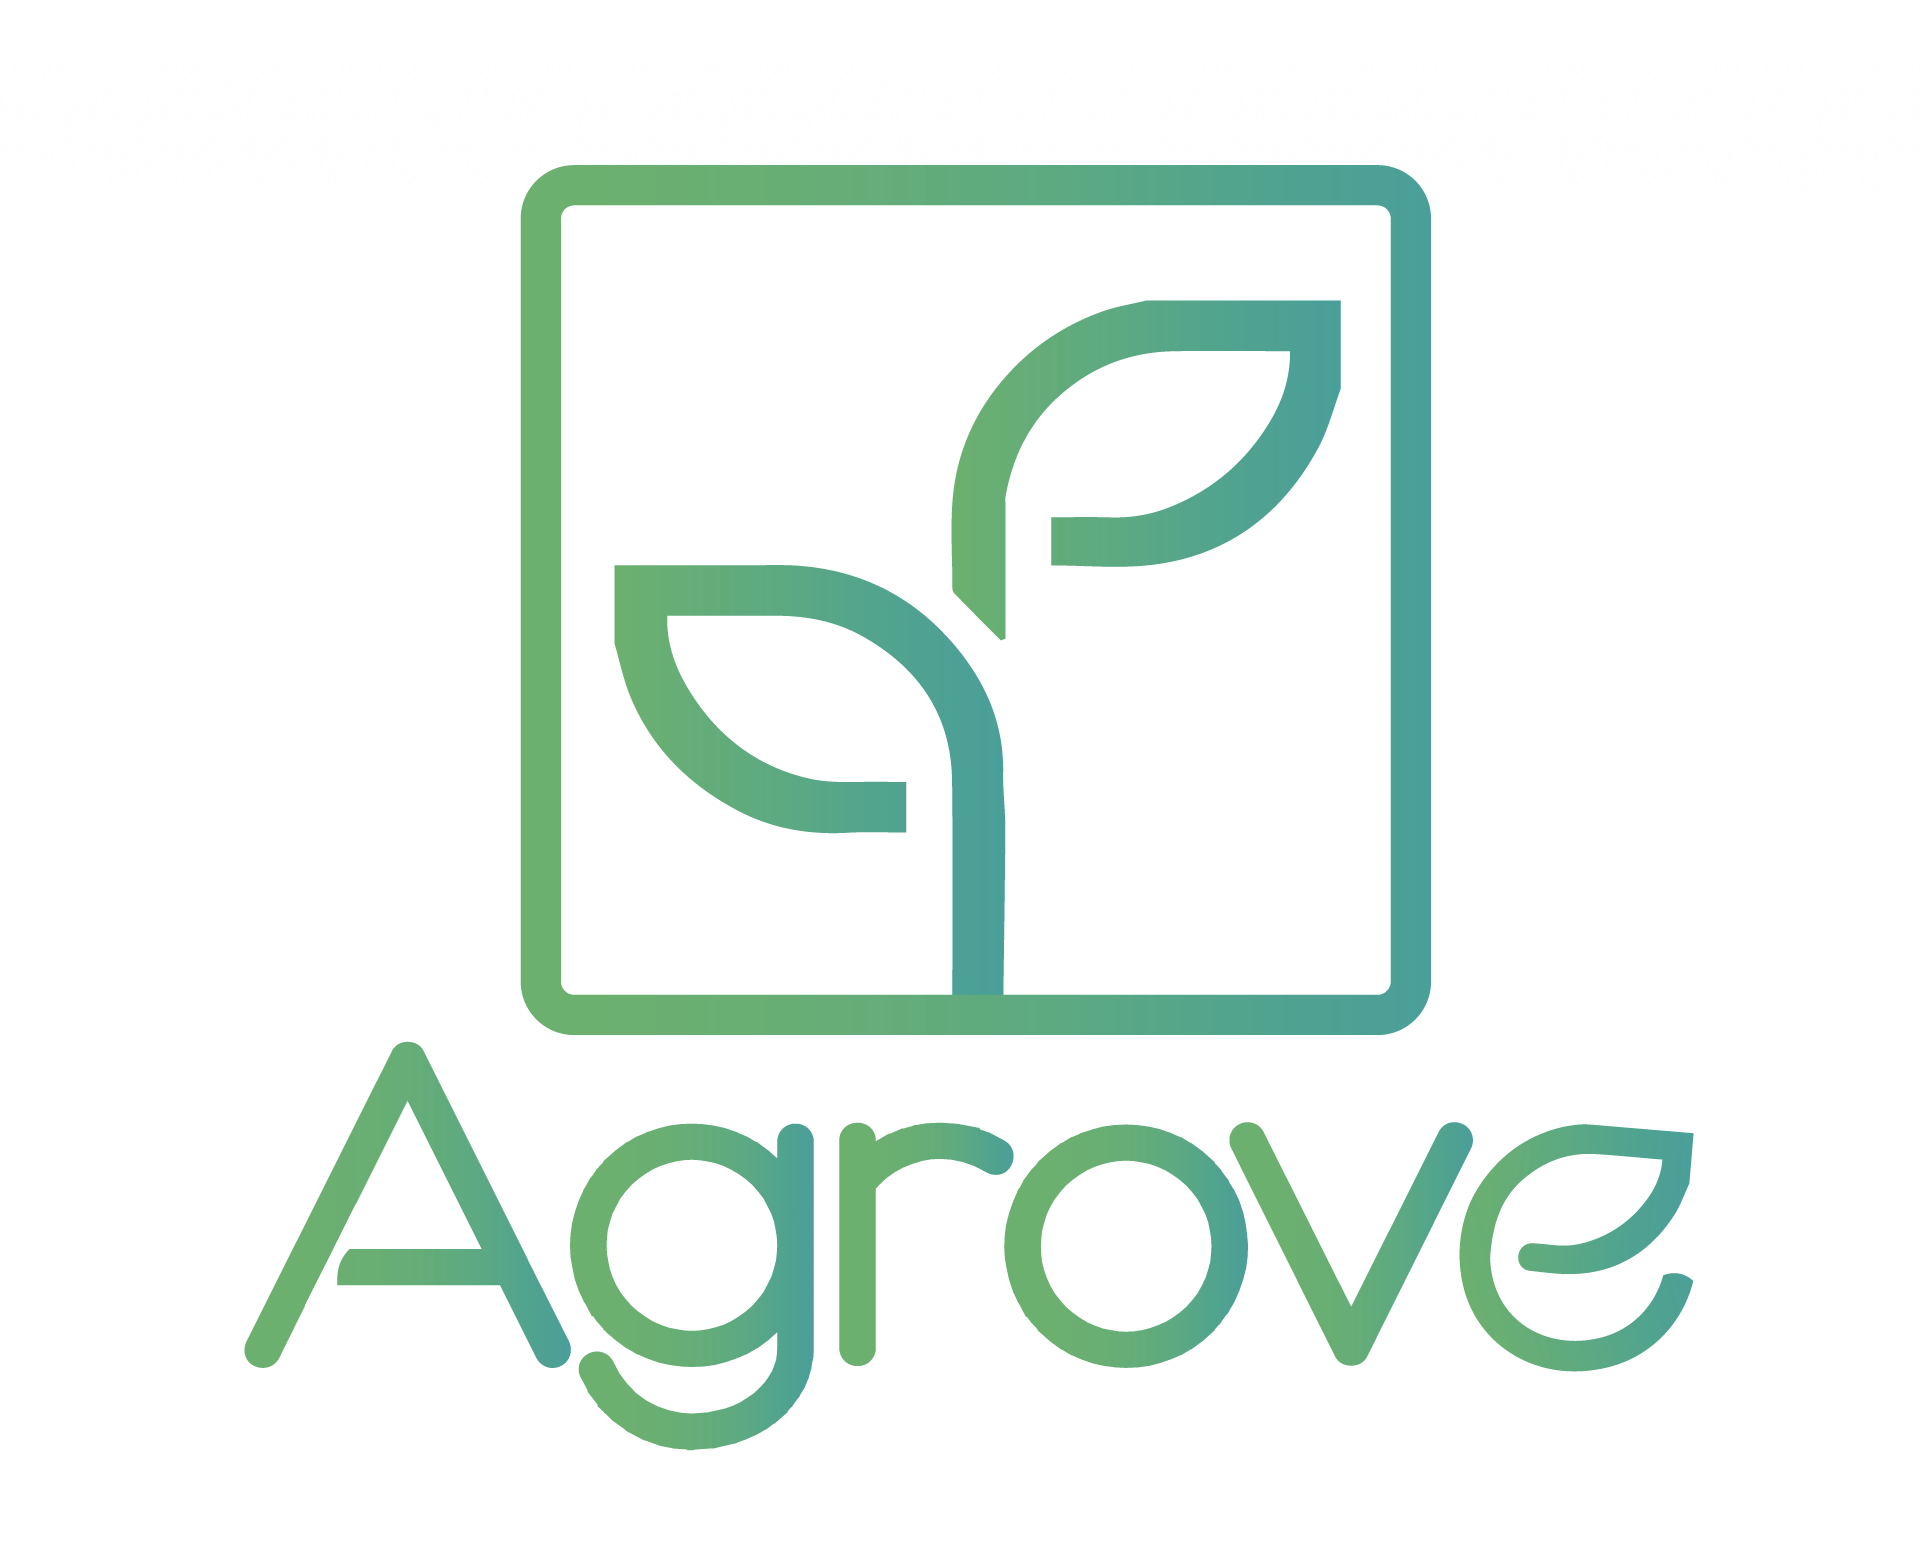 Agrove